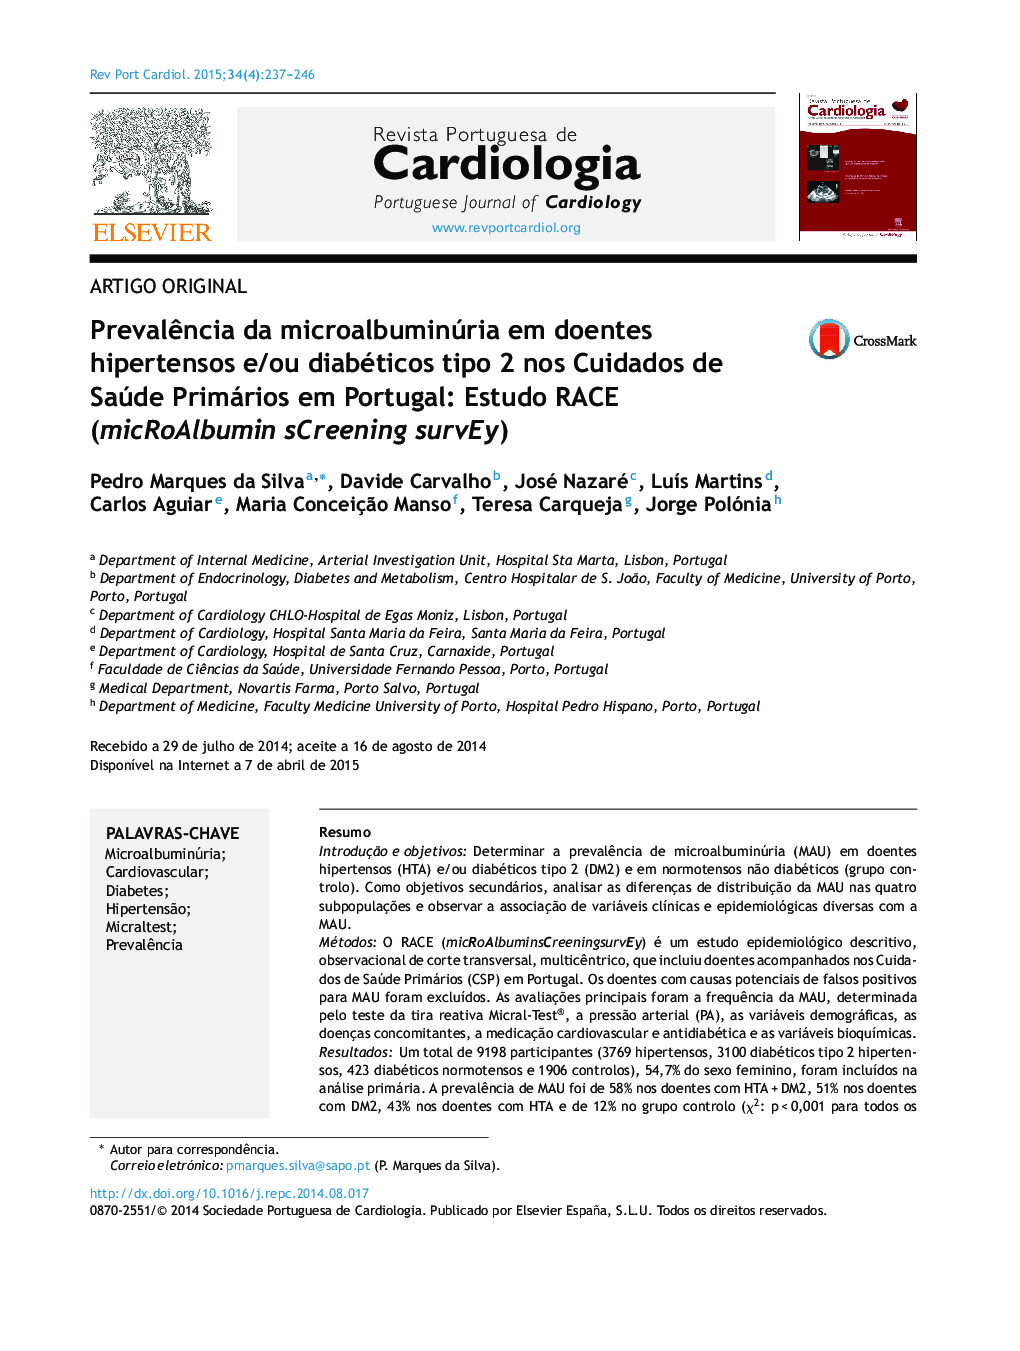 Prevalência da microalbuminúria em doentes hipertensos e/ou diabéticos tipo 2 nos Cuidados de Saúde Primários em Portugal: Estudo RACE (micRoAlbumin sCreening survEy)